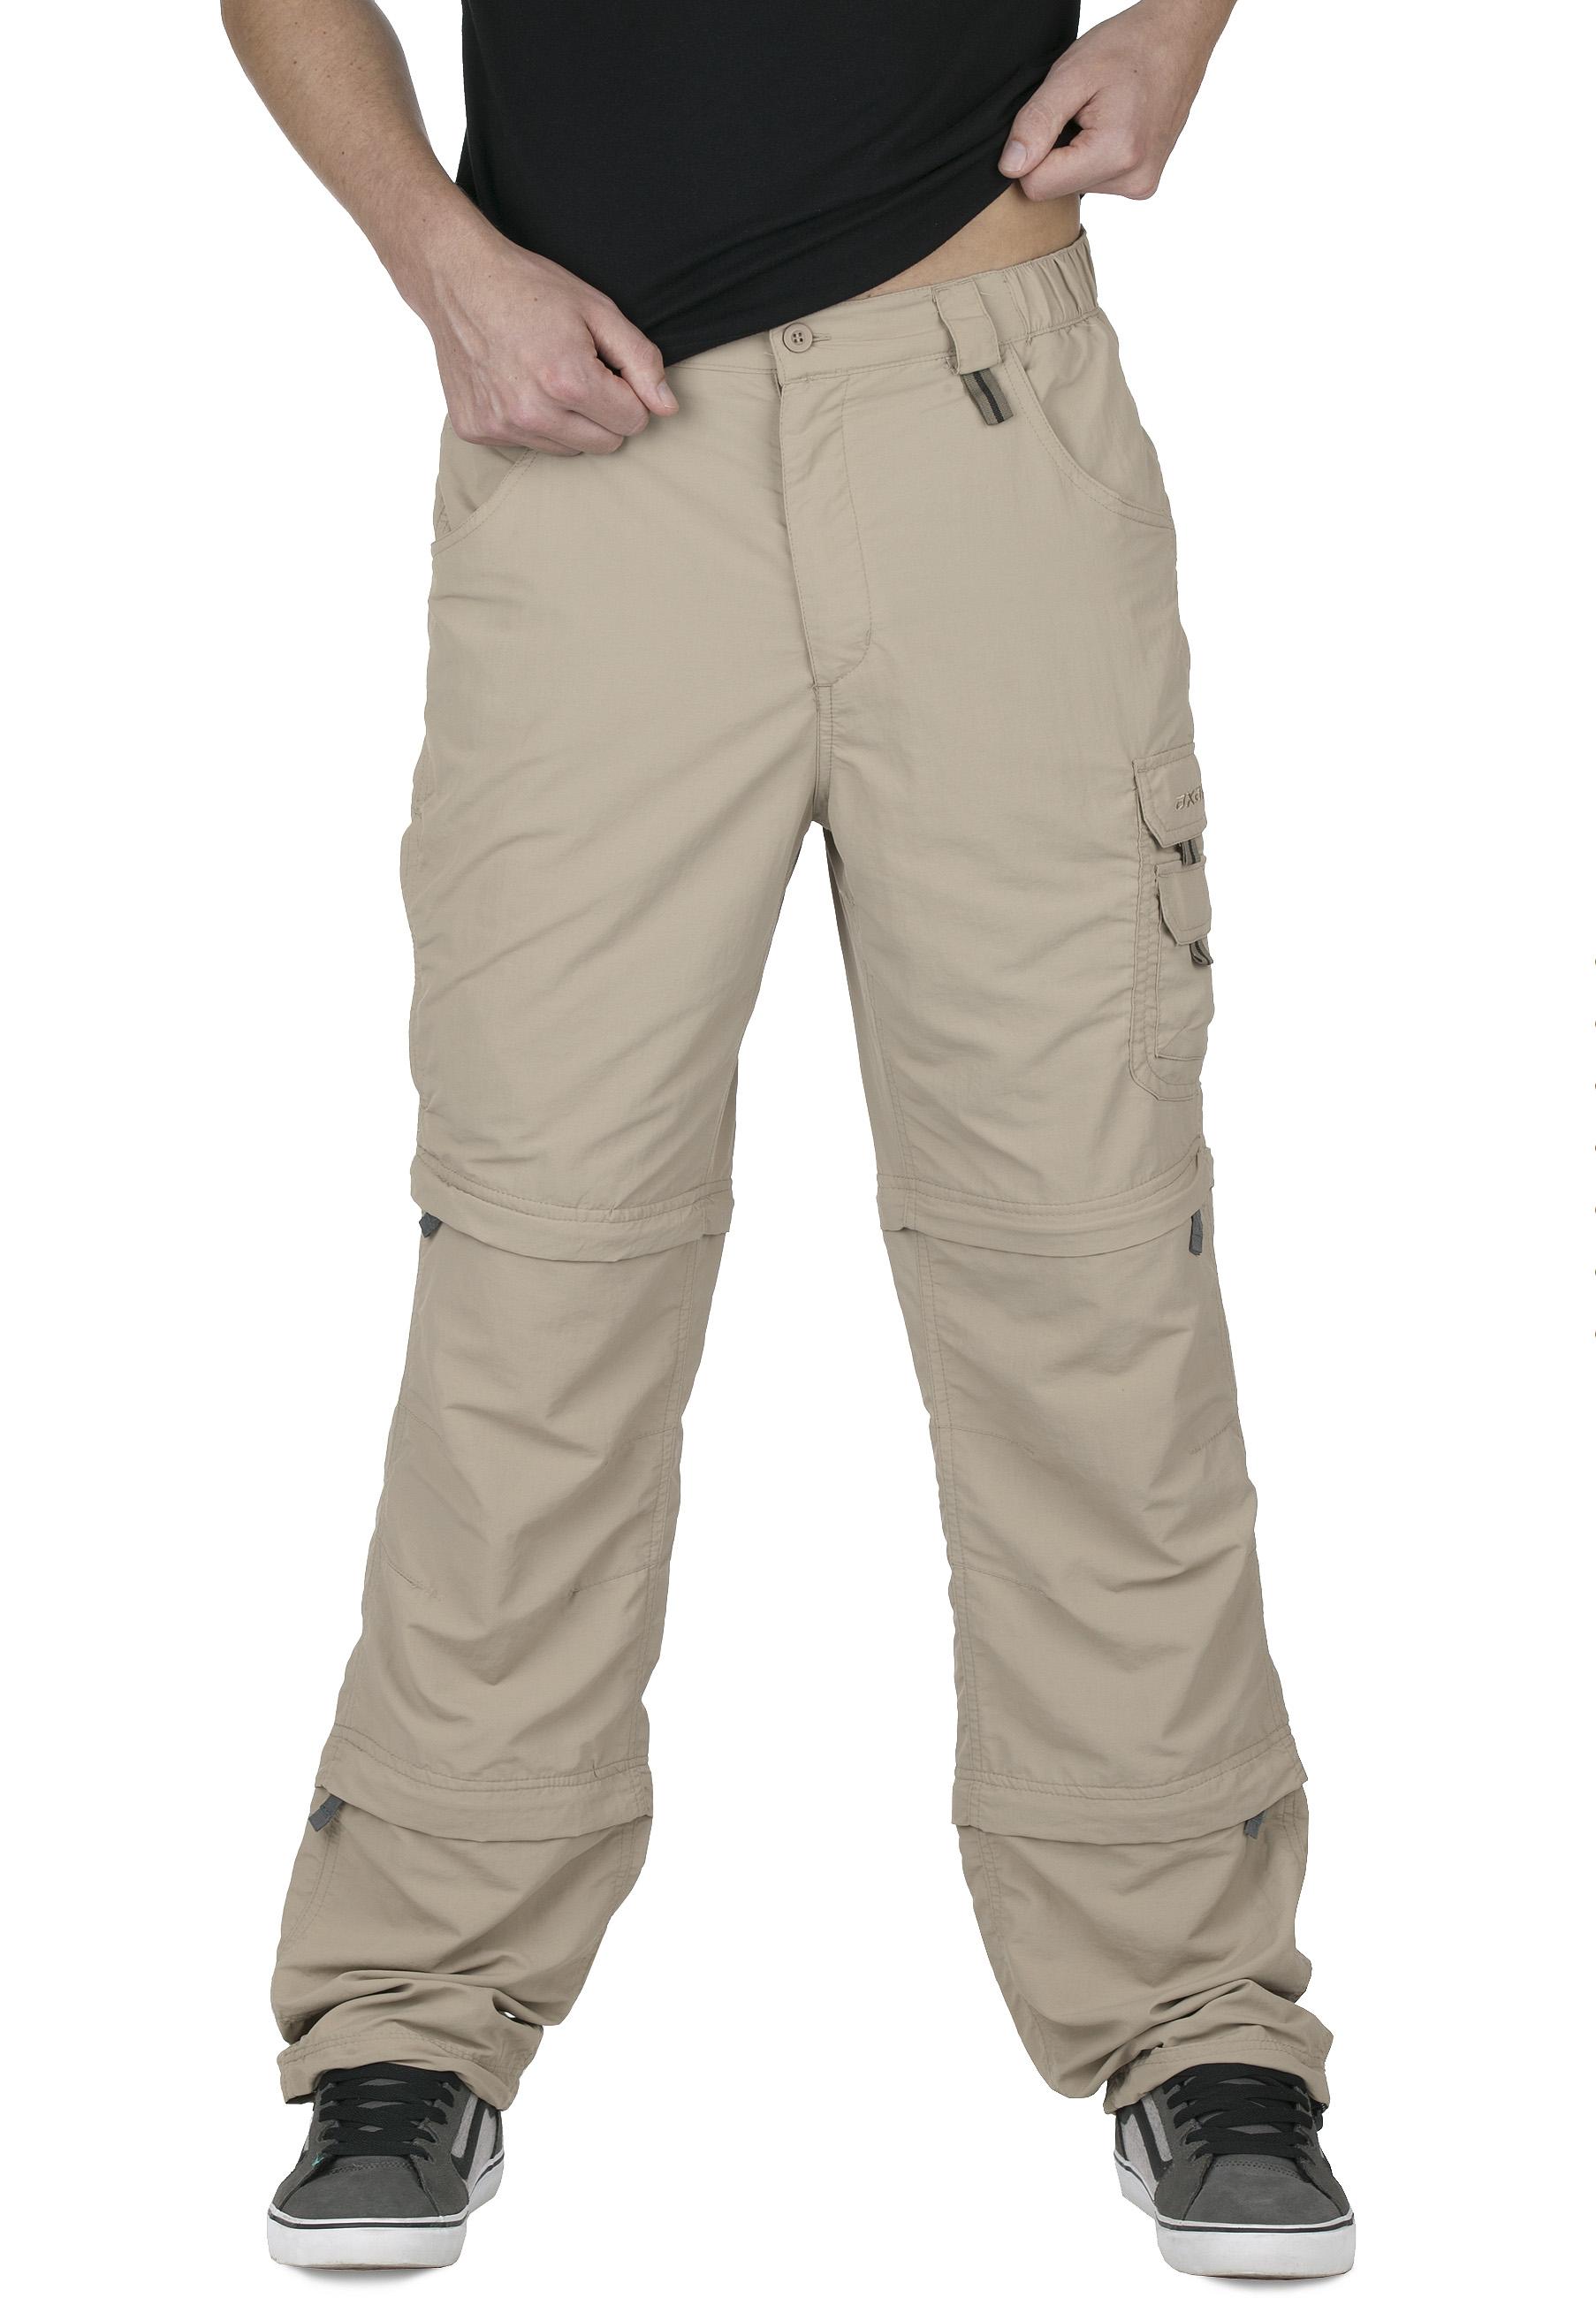 Foto Pantalones desmontables axant Pro Double beige para hombre , l foto 964957